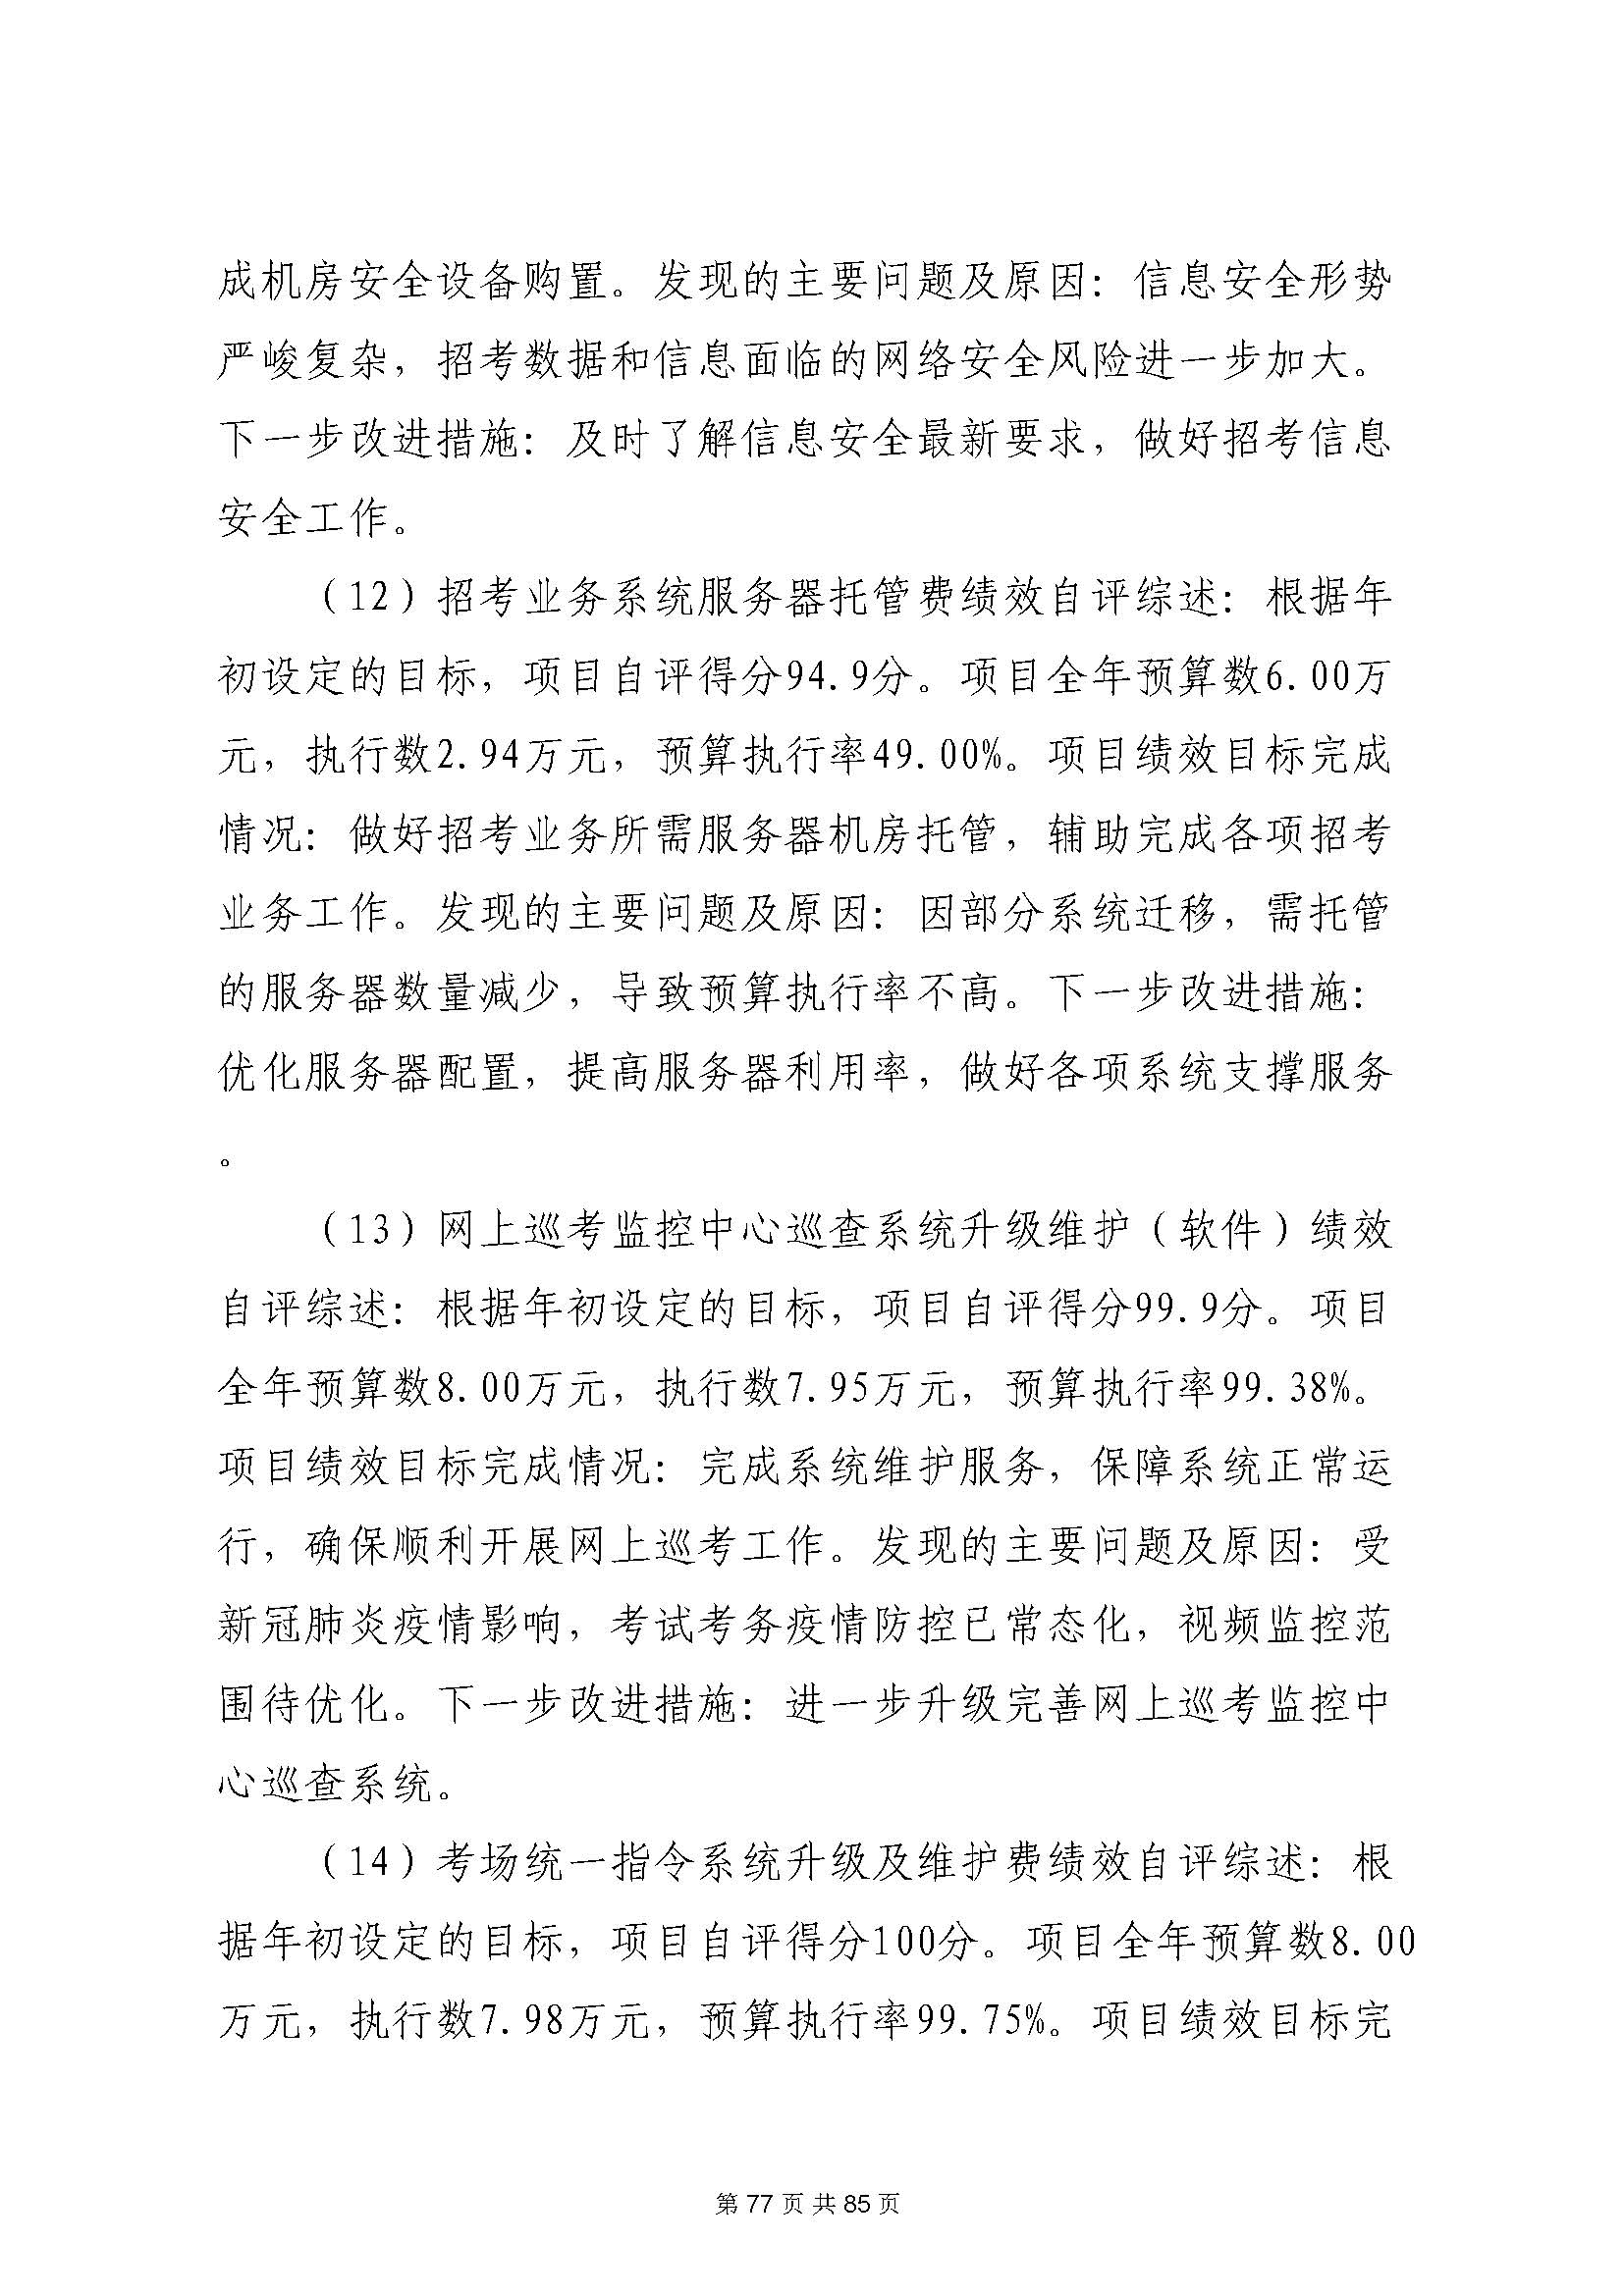 深圳市招生考试办公室2020年度部门决算_页面_78.jpg